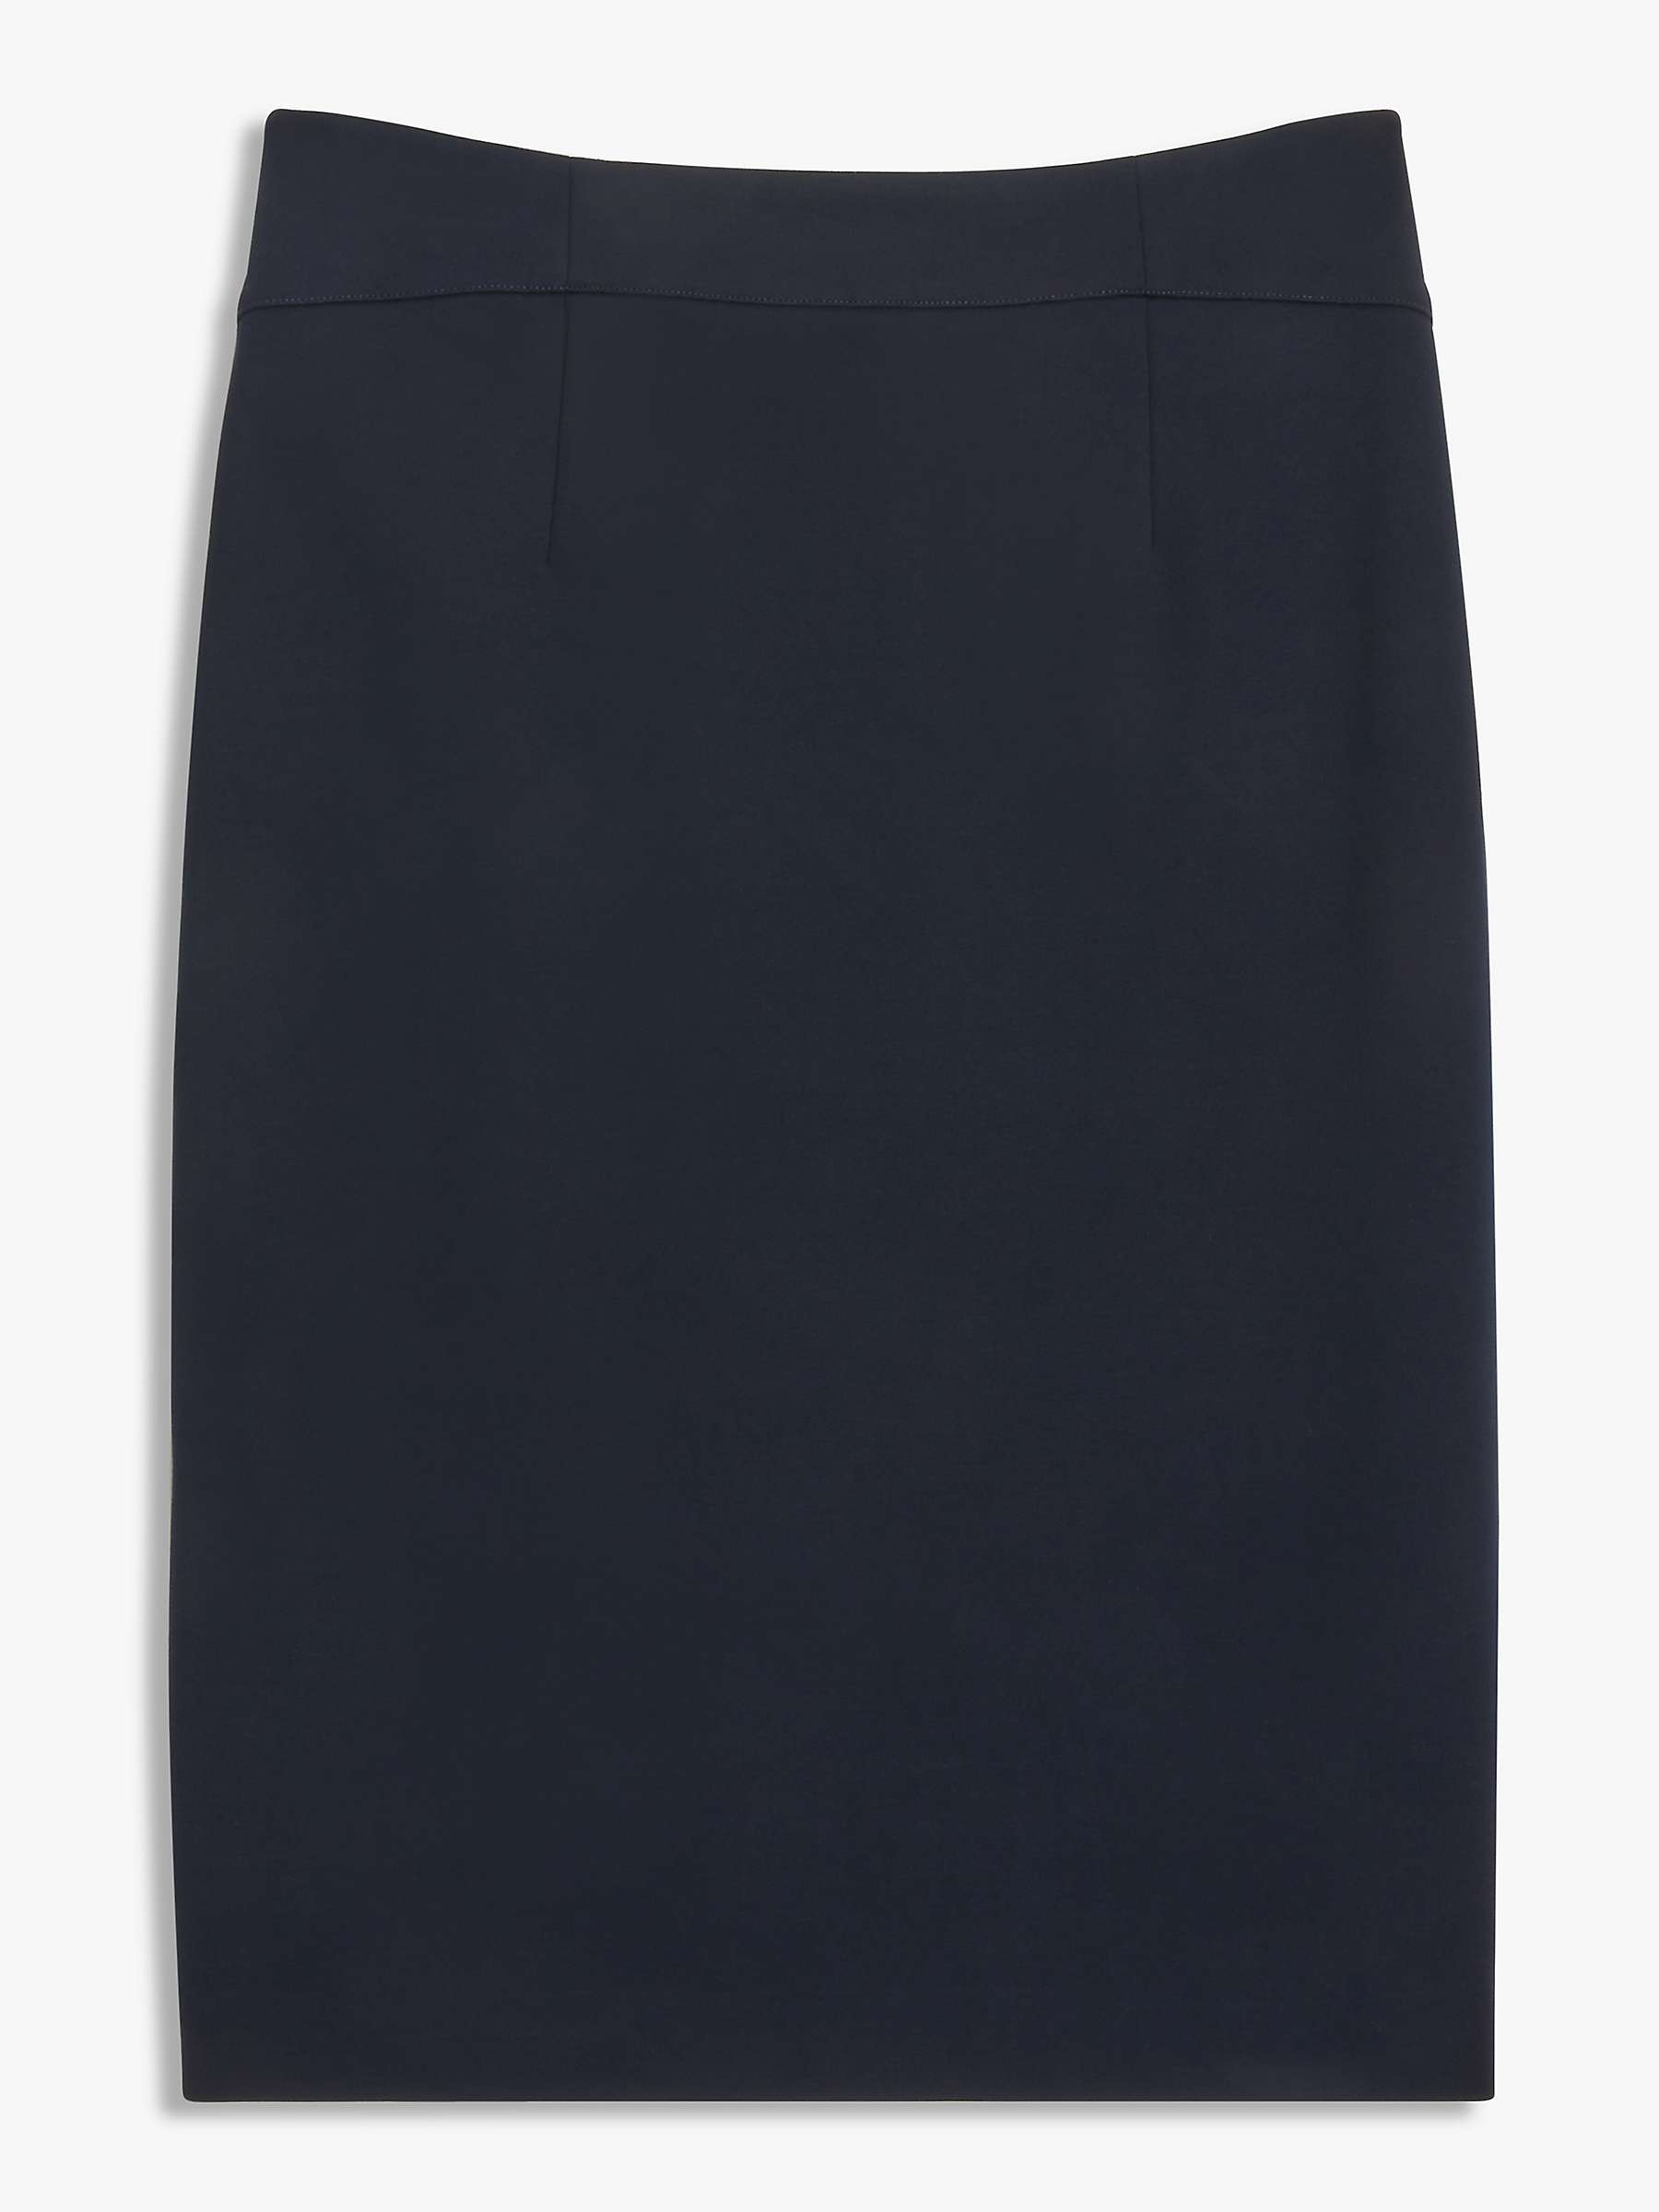 John Lewis Taylor Ponte Pencil Skirt, Navy at John Lewis & Partners